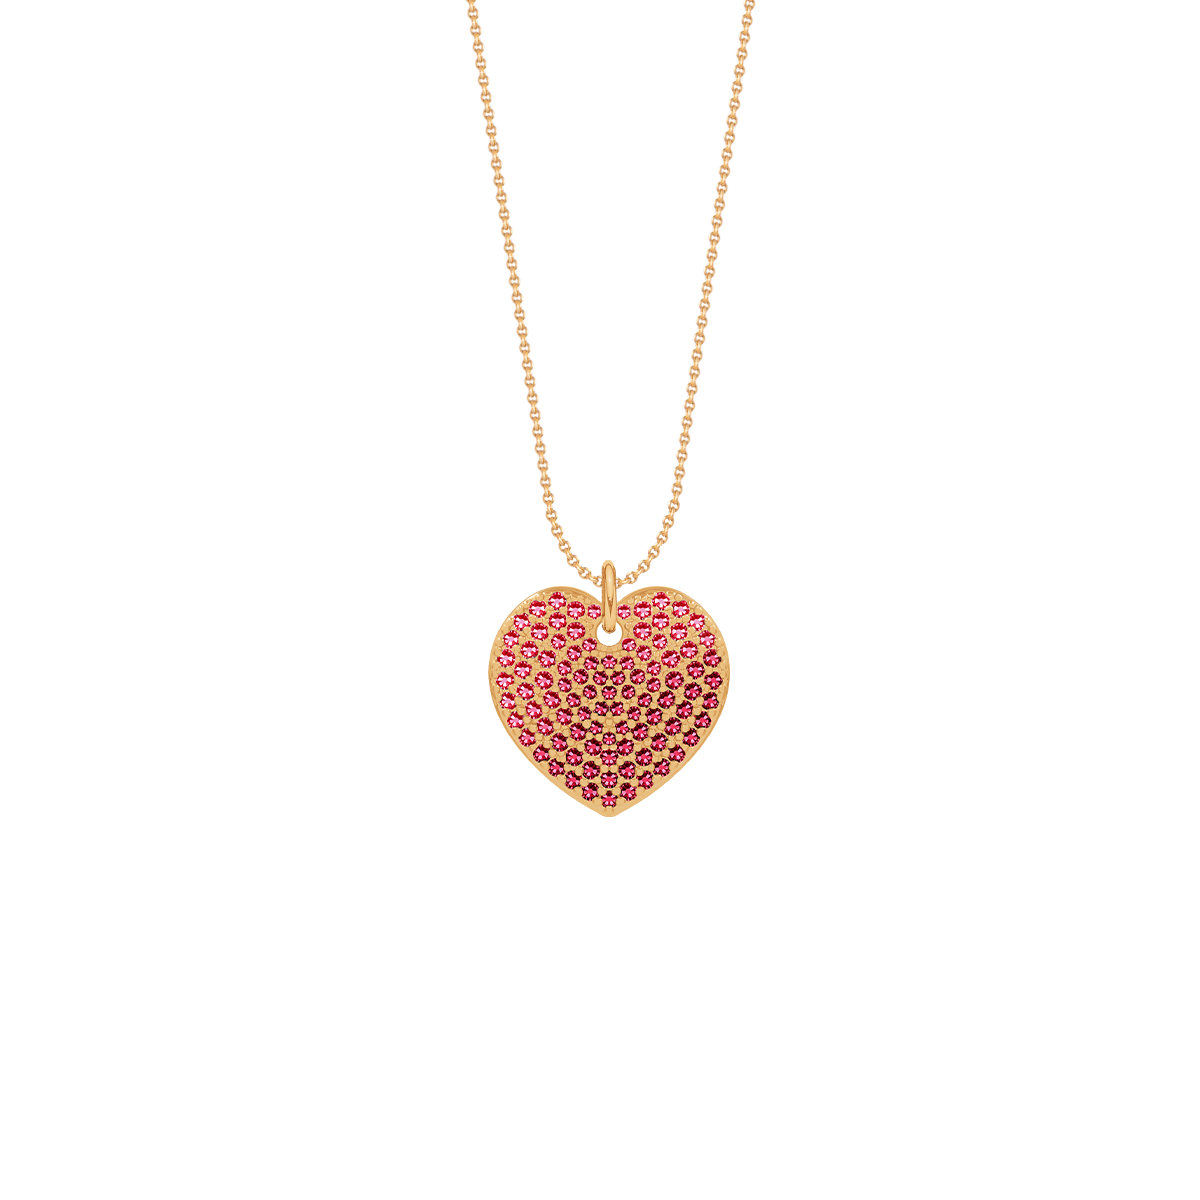 Halskette Faden mit Anhänger Herz 1,5 cm mit rosa Zirkonen, vergoldet